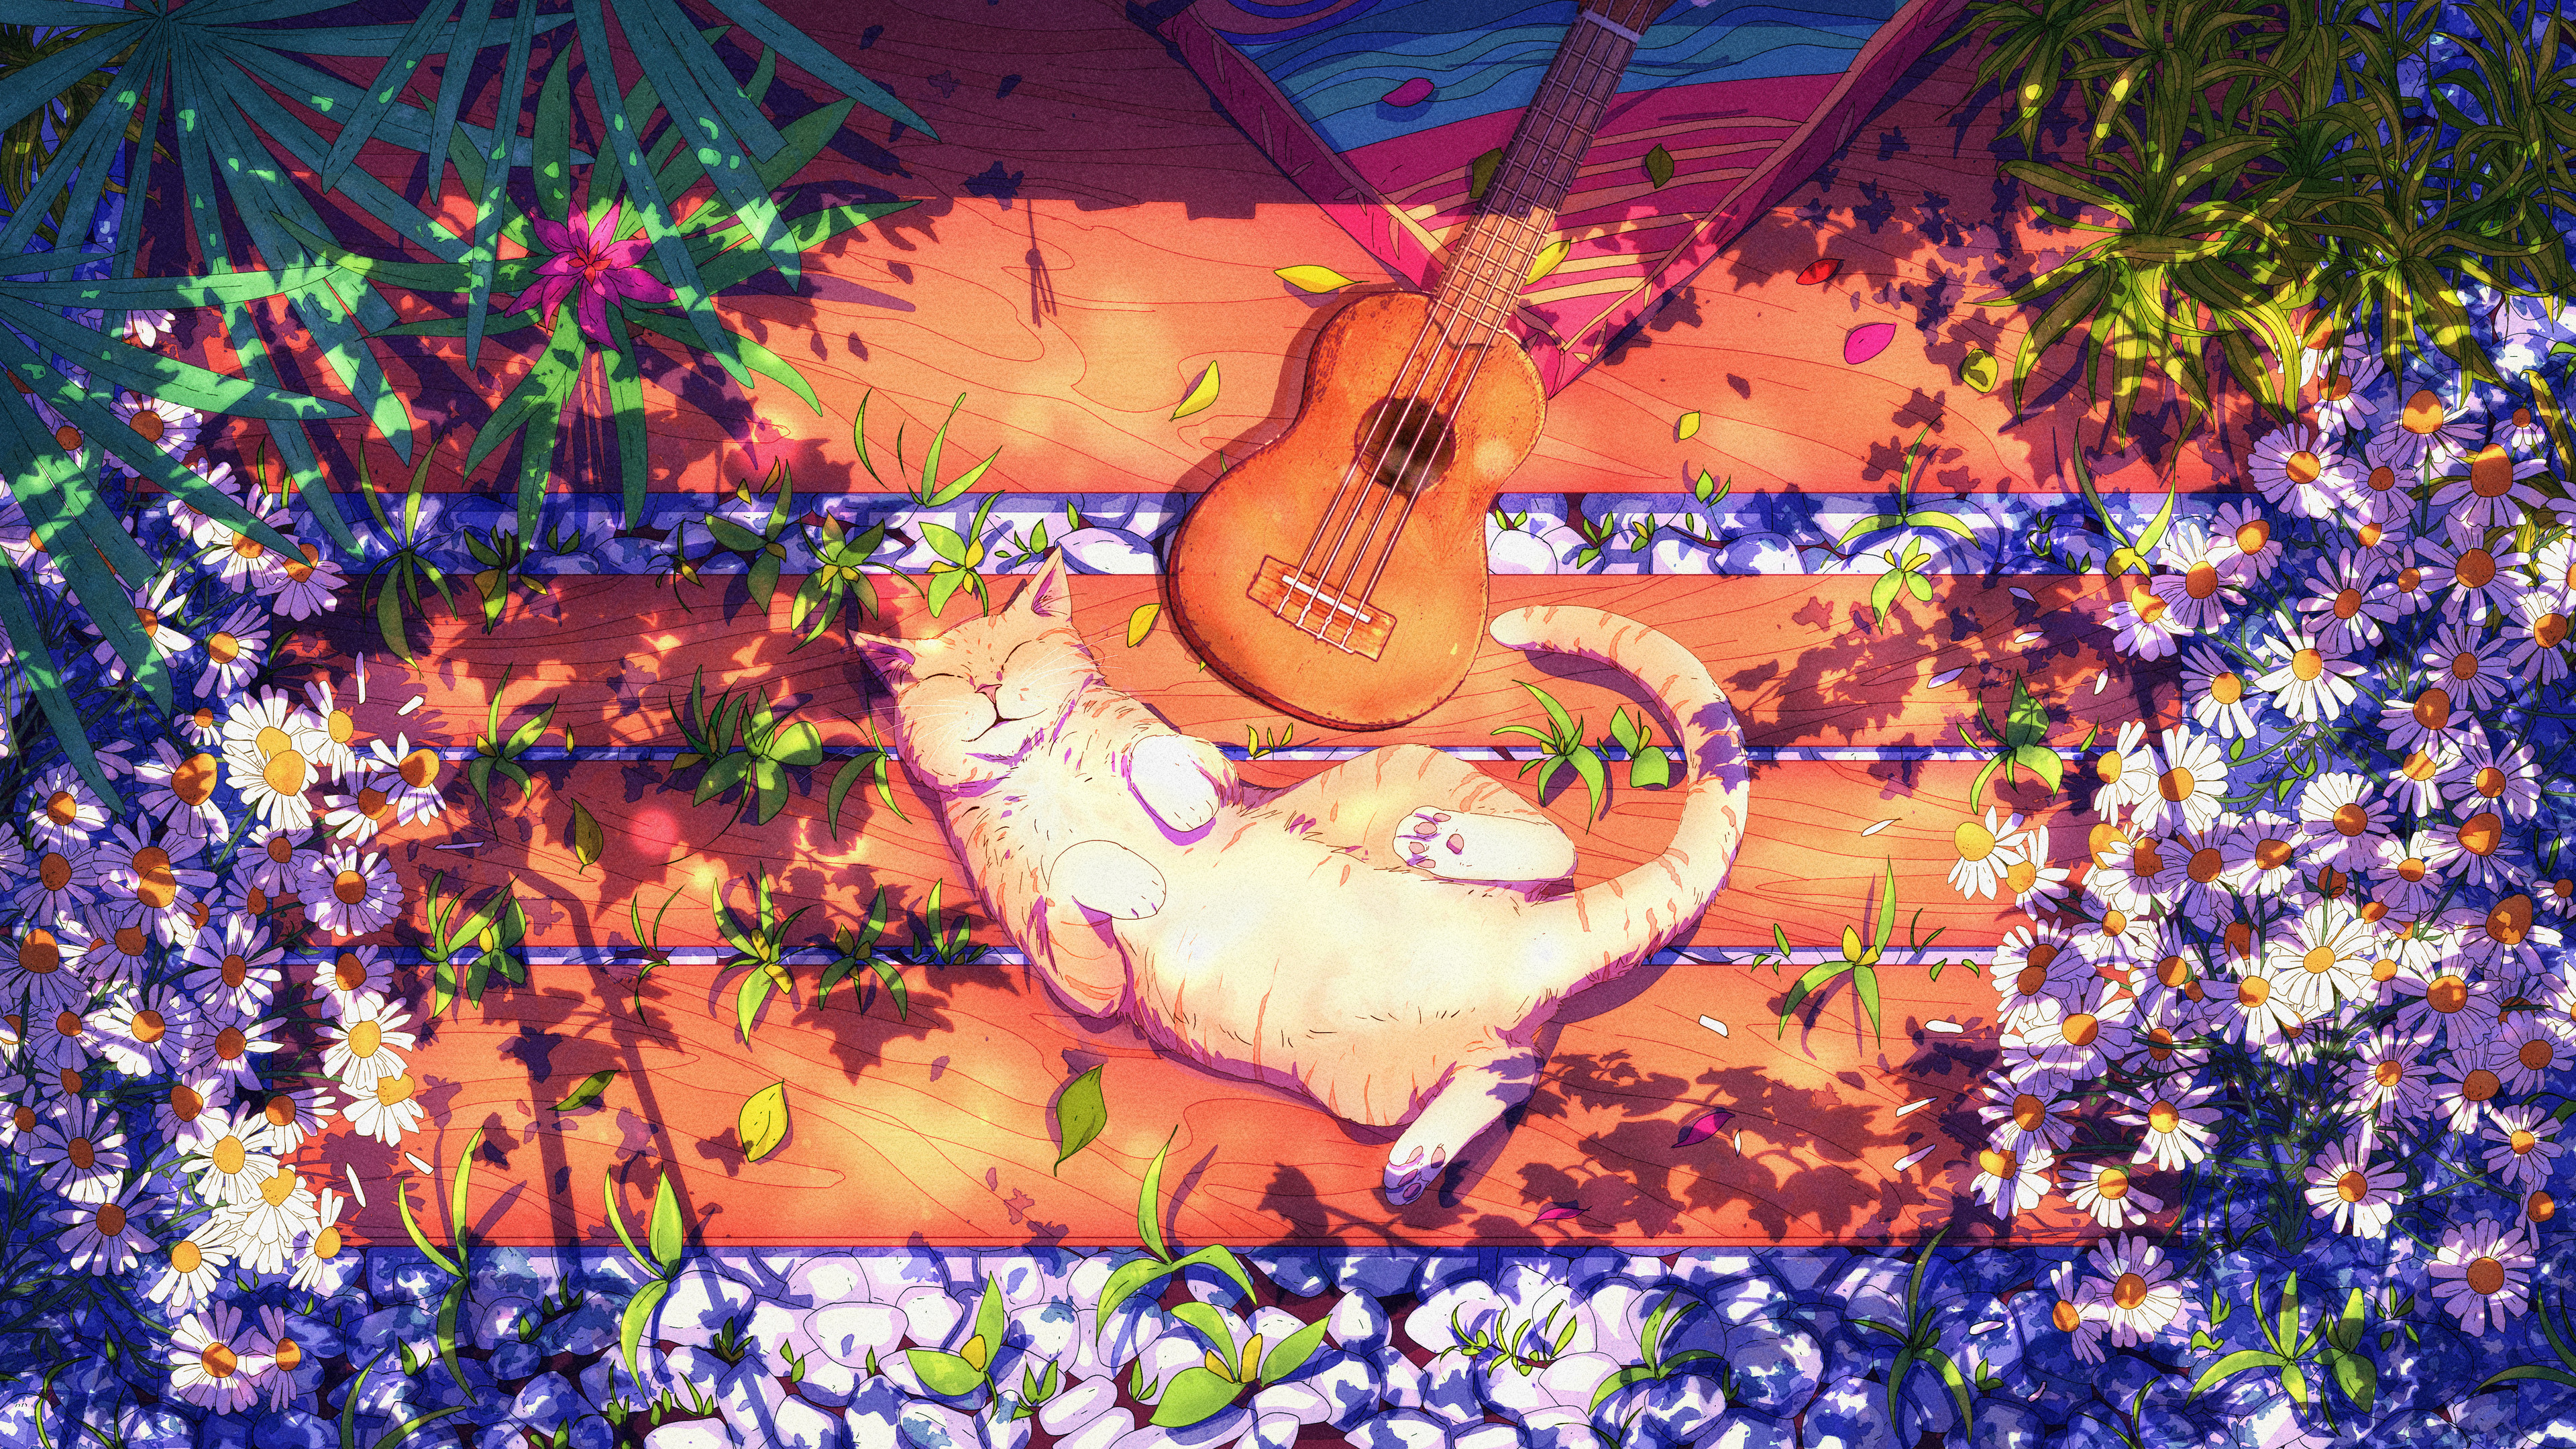 Christian Benavides Digital Art Fantasy Art Cats Guitar Flowers Bench Sunlight Musical Instrument Pe 3840x2160